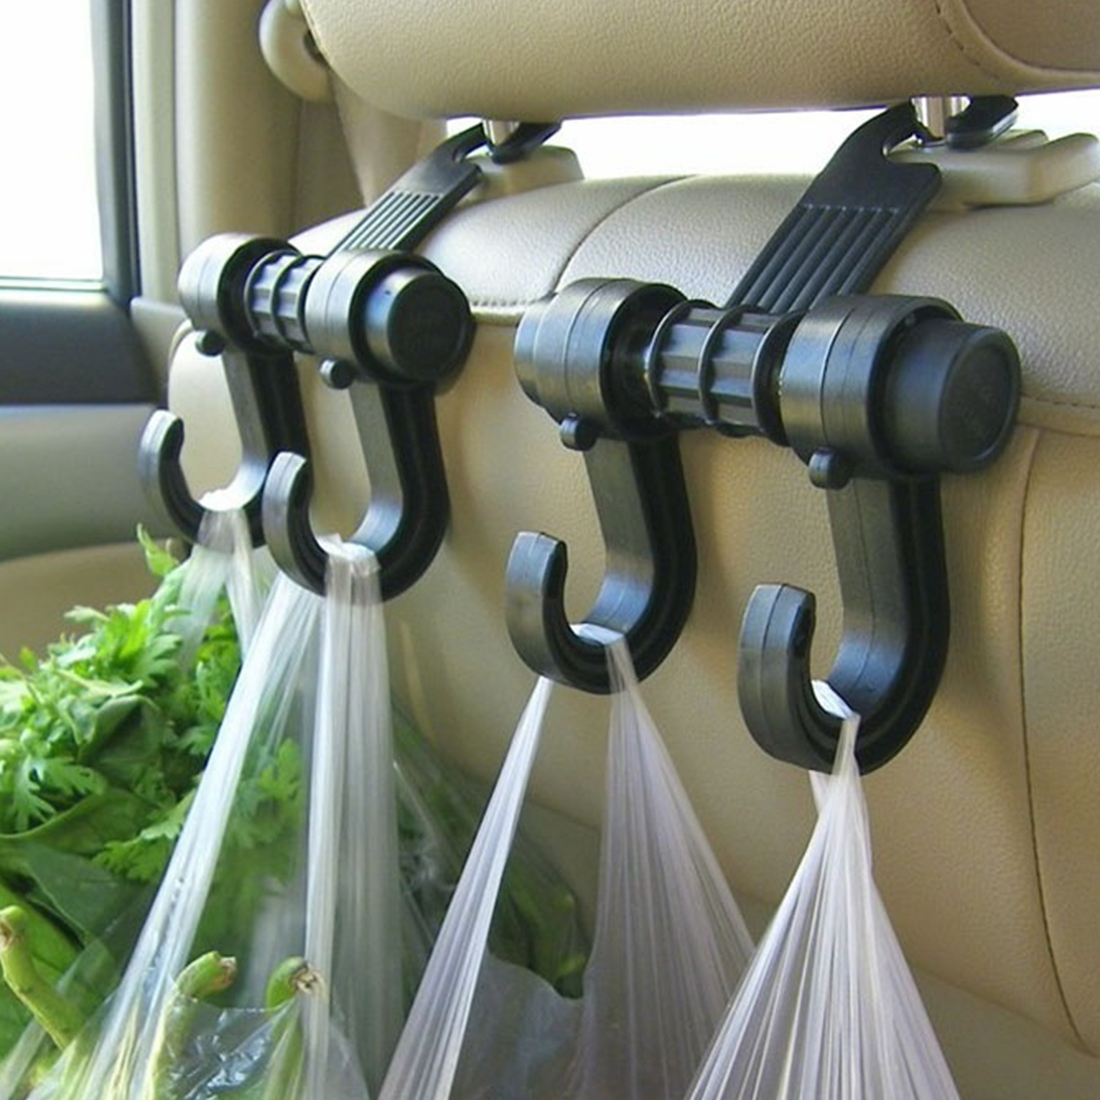 Kleiderbügel fürs Auto - Anzug & Hemd knitterfrei transportieren